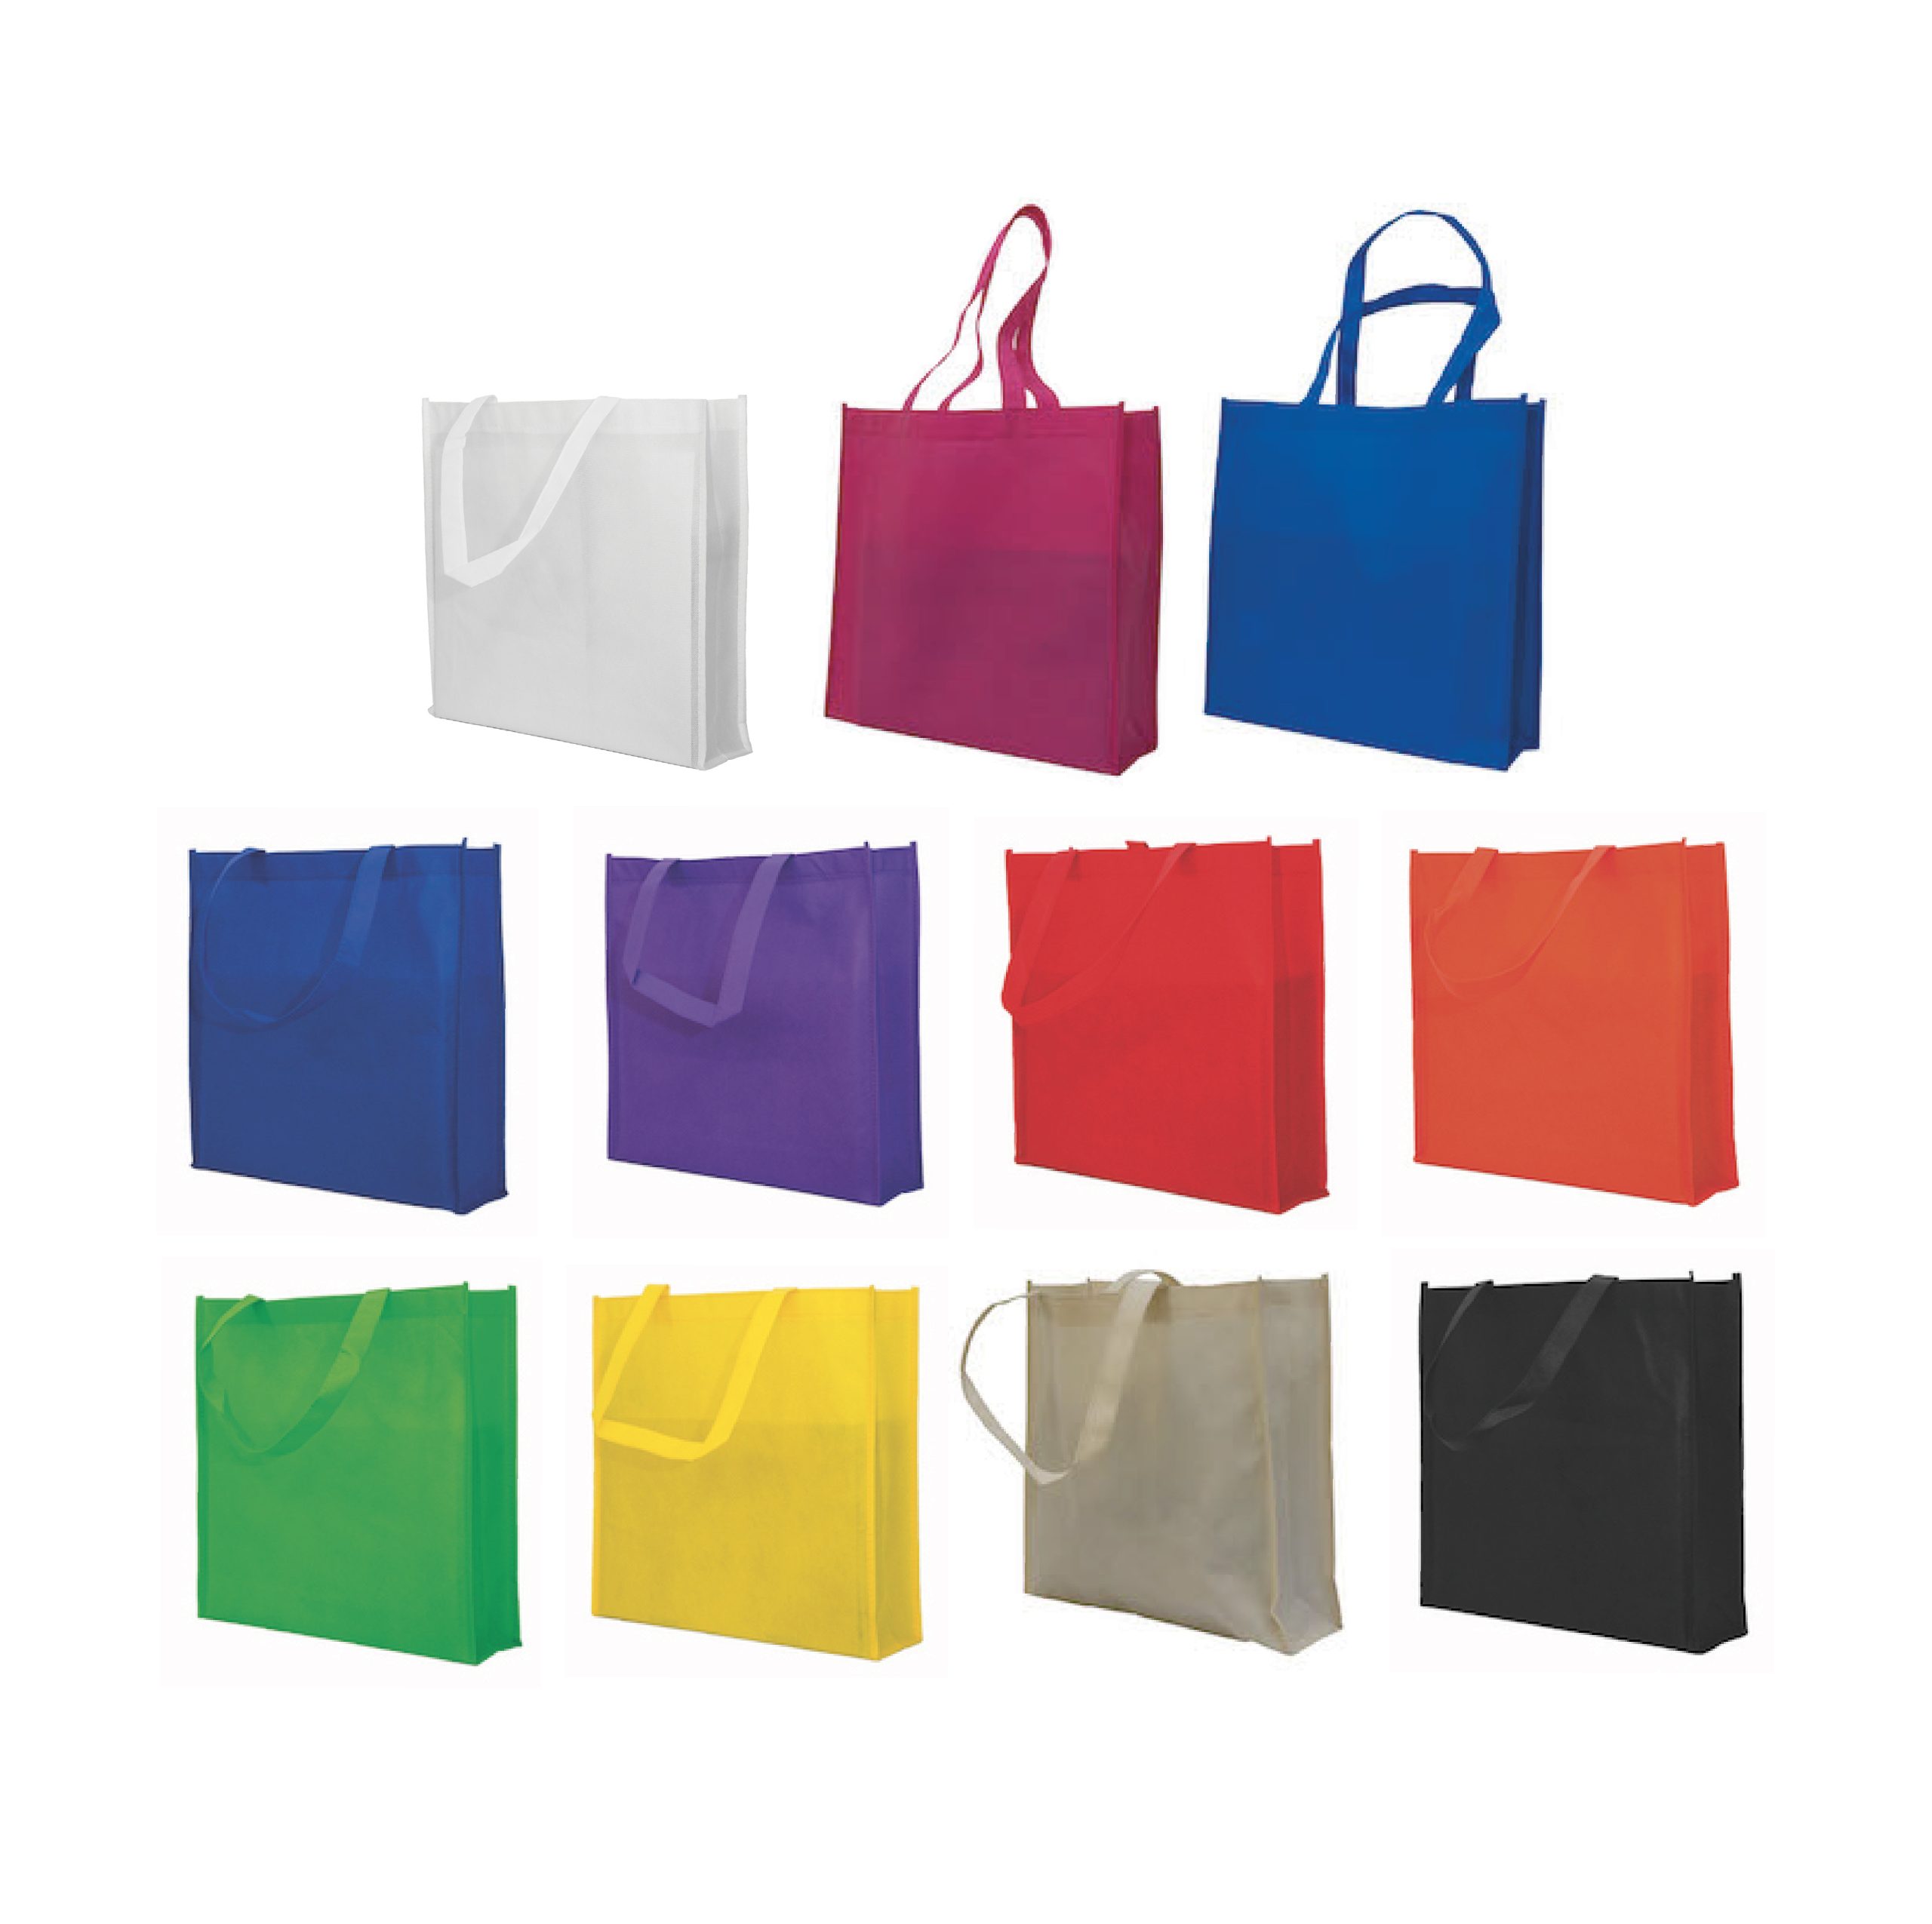 A3 non-woven bag | Non Woven Bag Printing | Corporate Gifts SG